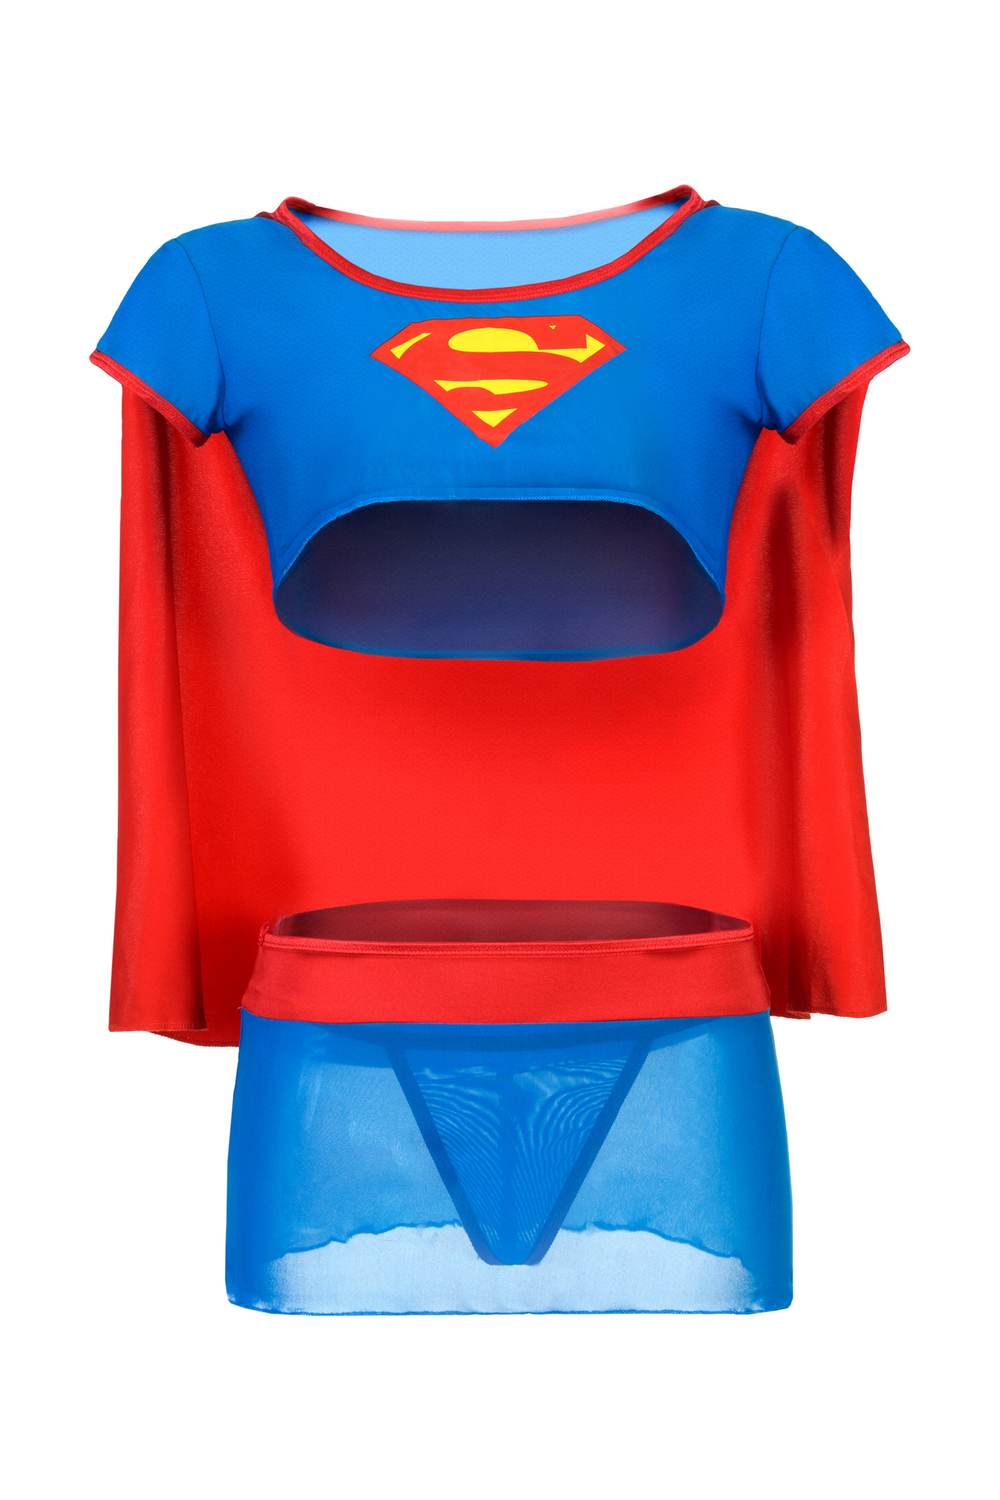 Костюм супервуман Candy Girl (топ, юбка, стринги), сине-красный, OS